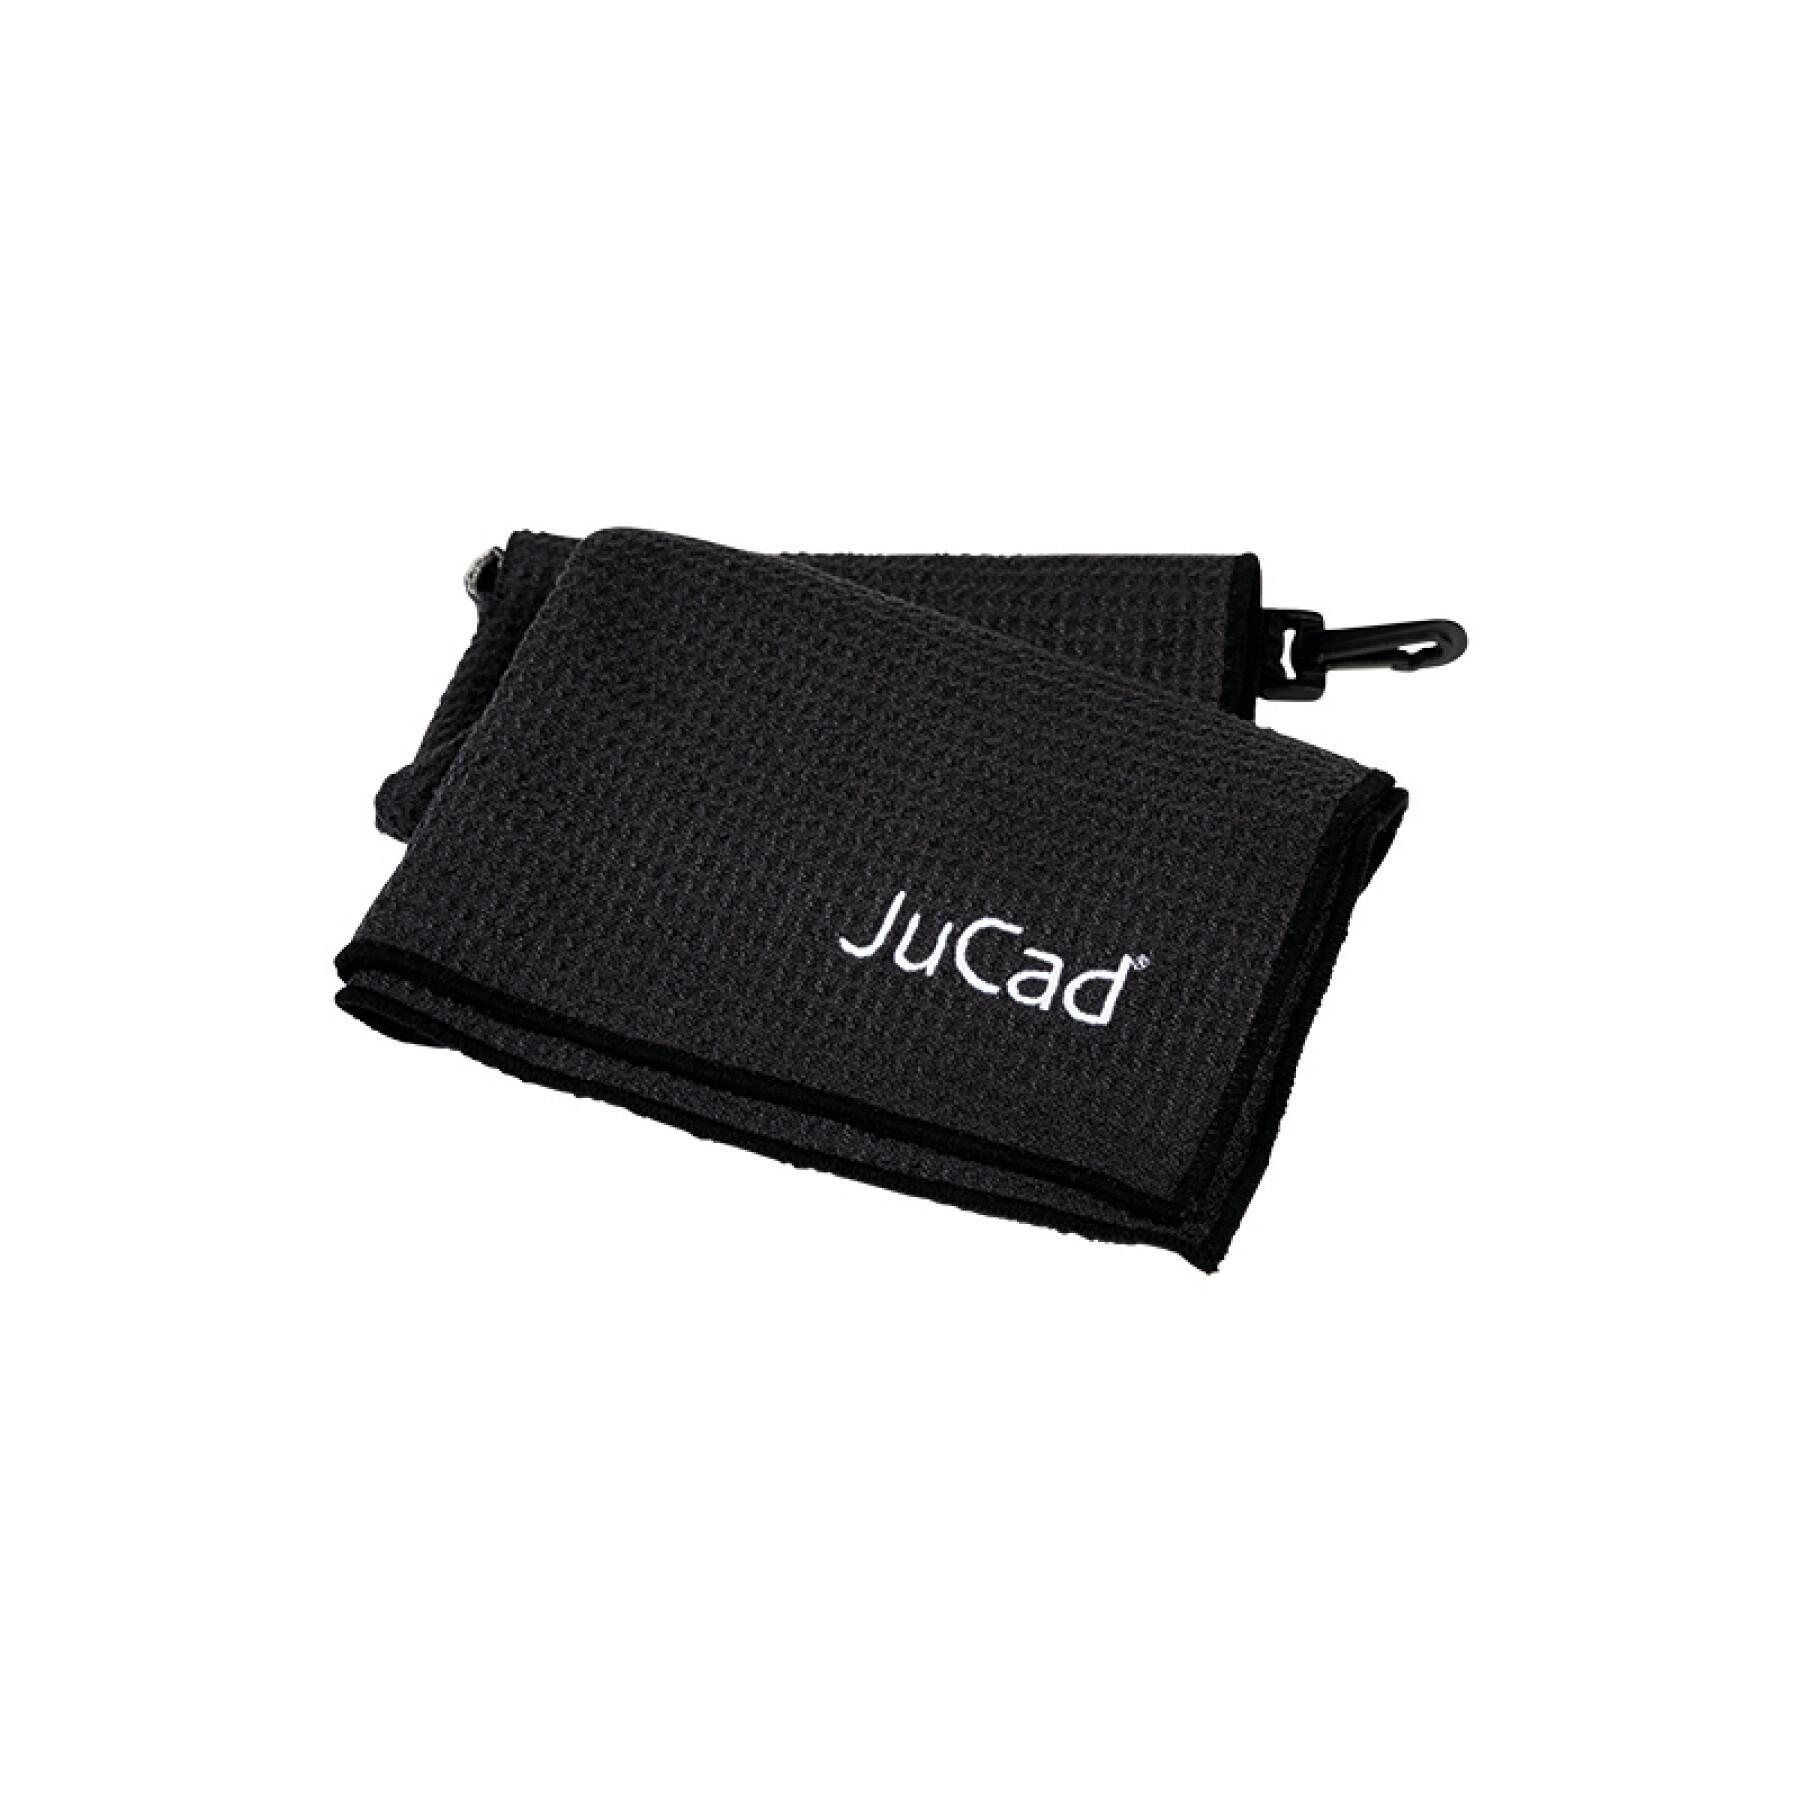 Golf towel xl JuCad